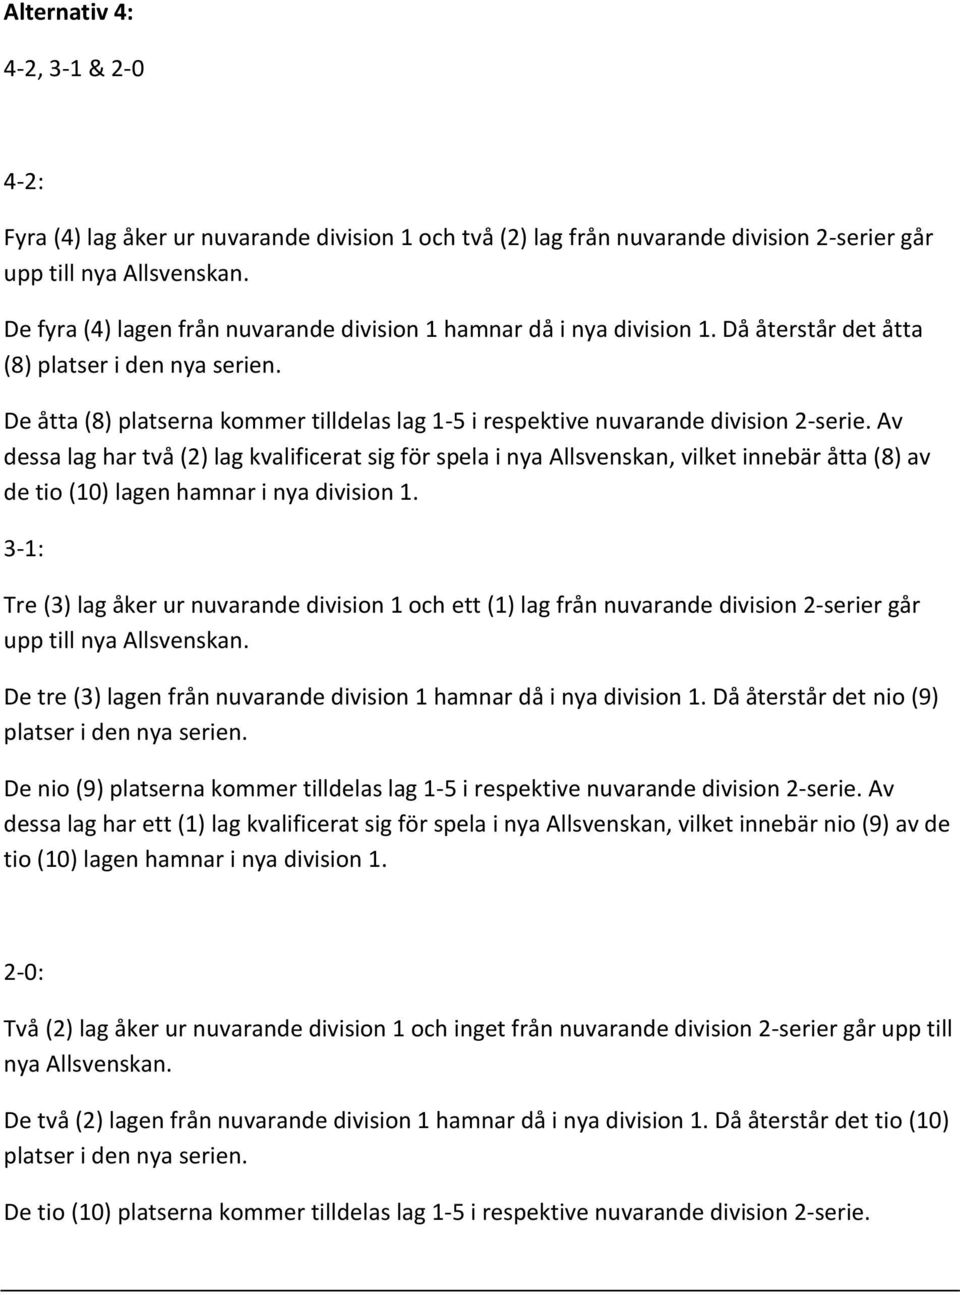 Av dessa lag har två (2) lag kvalificerat sig för spela i nya Allsvenskan, vilket innebär åtta (8) av de tio (10) lagen hamnar i nya division 1.